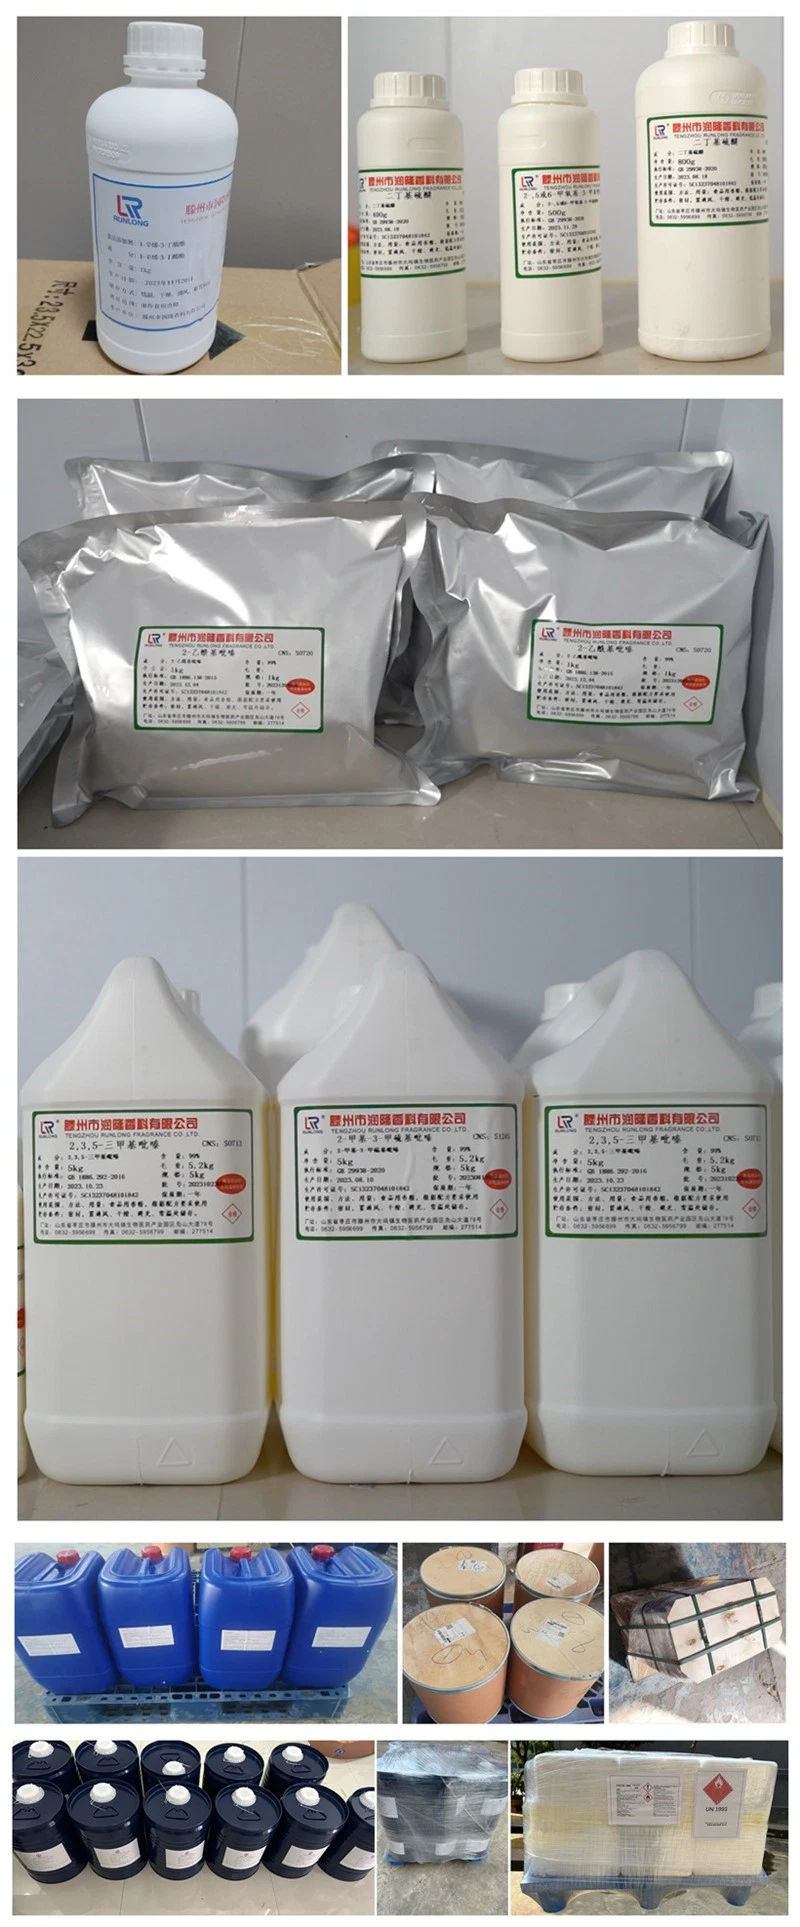 Aroma Food Powder Fema 3328 2-Acetylthiazole CAS 24295-03-2 2-Acetyl Thiazole 99%